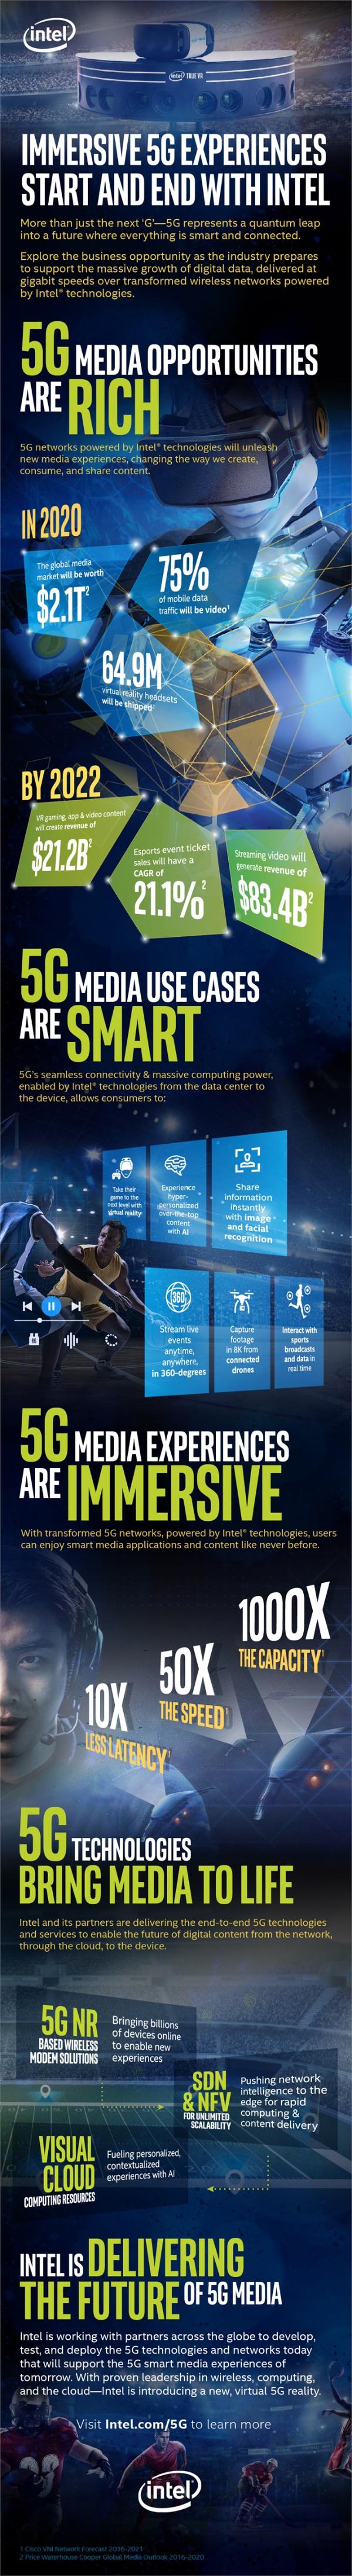 英特尔：2028年5G将为媒体娱乐创造1.3万亿美元新收入 游戏与视频推力巨大